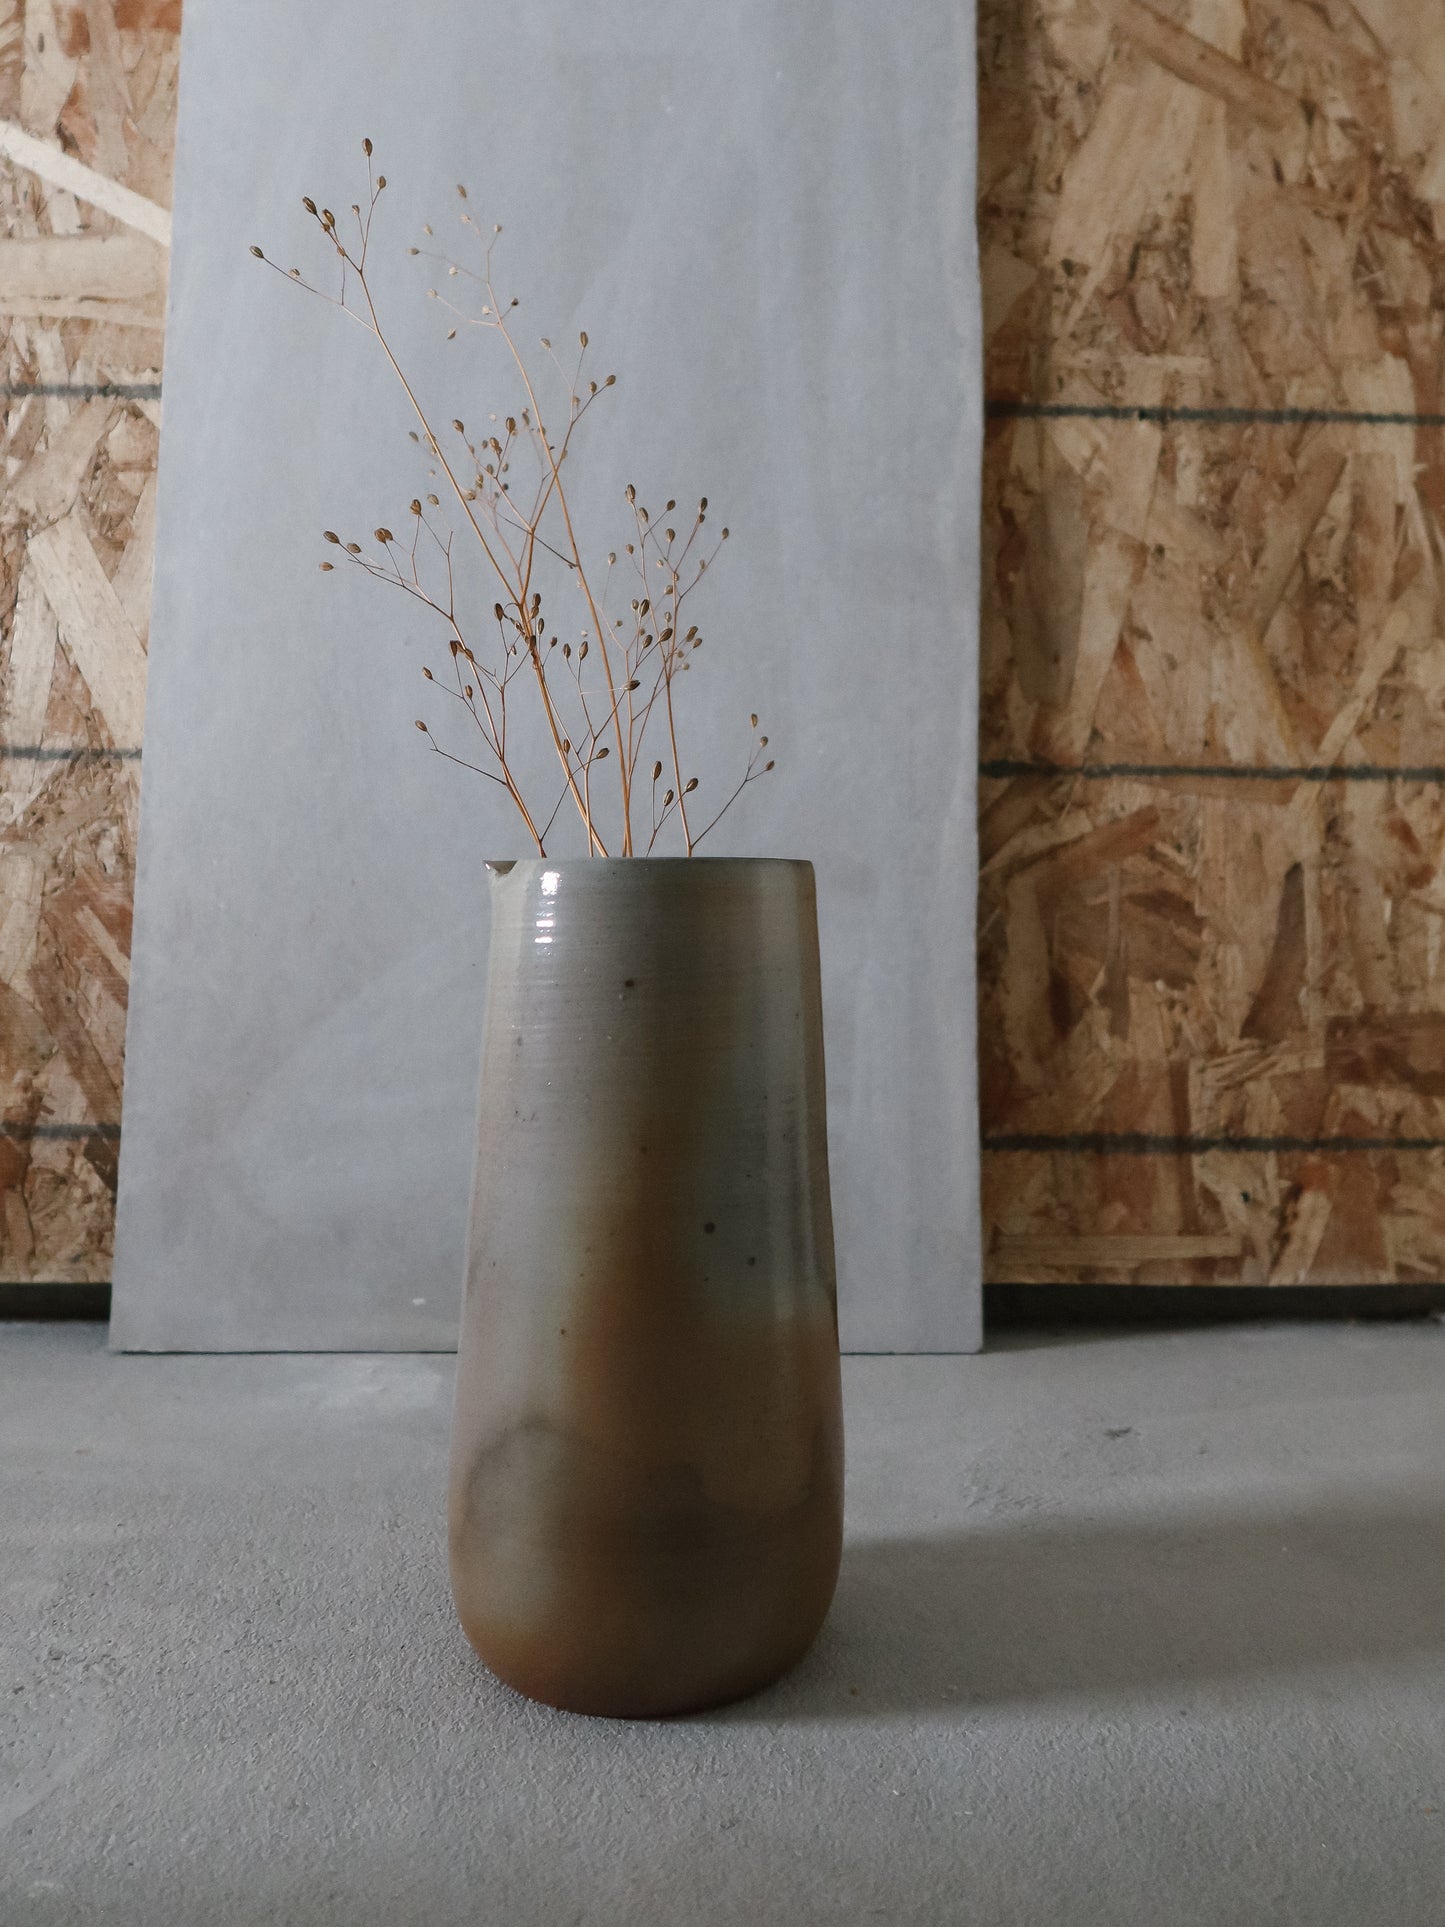 Midi tulip vase, wood fired